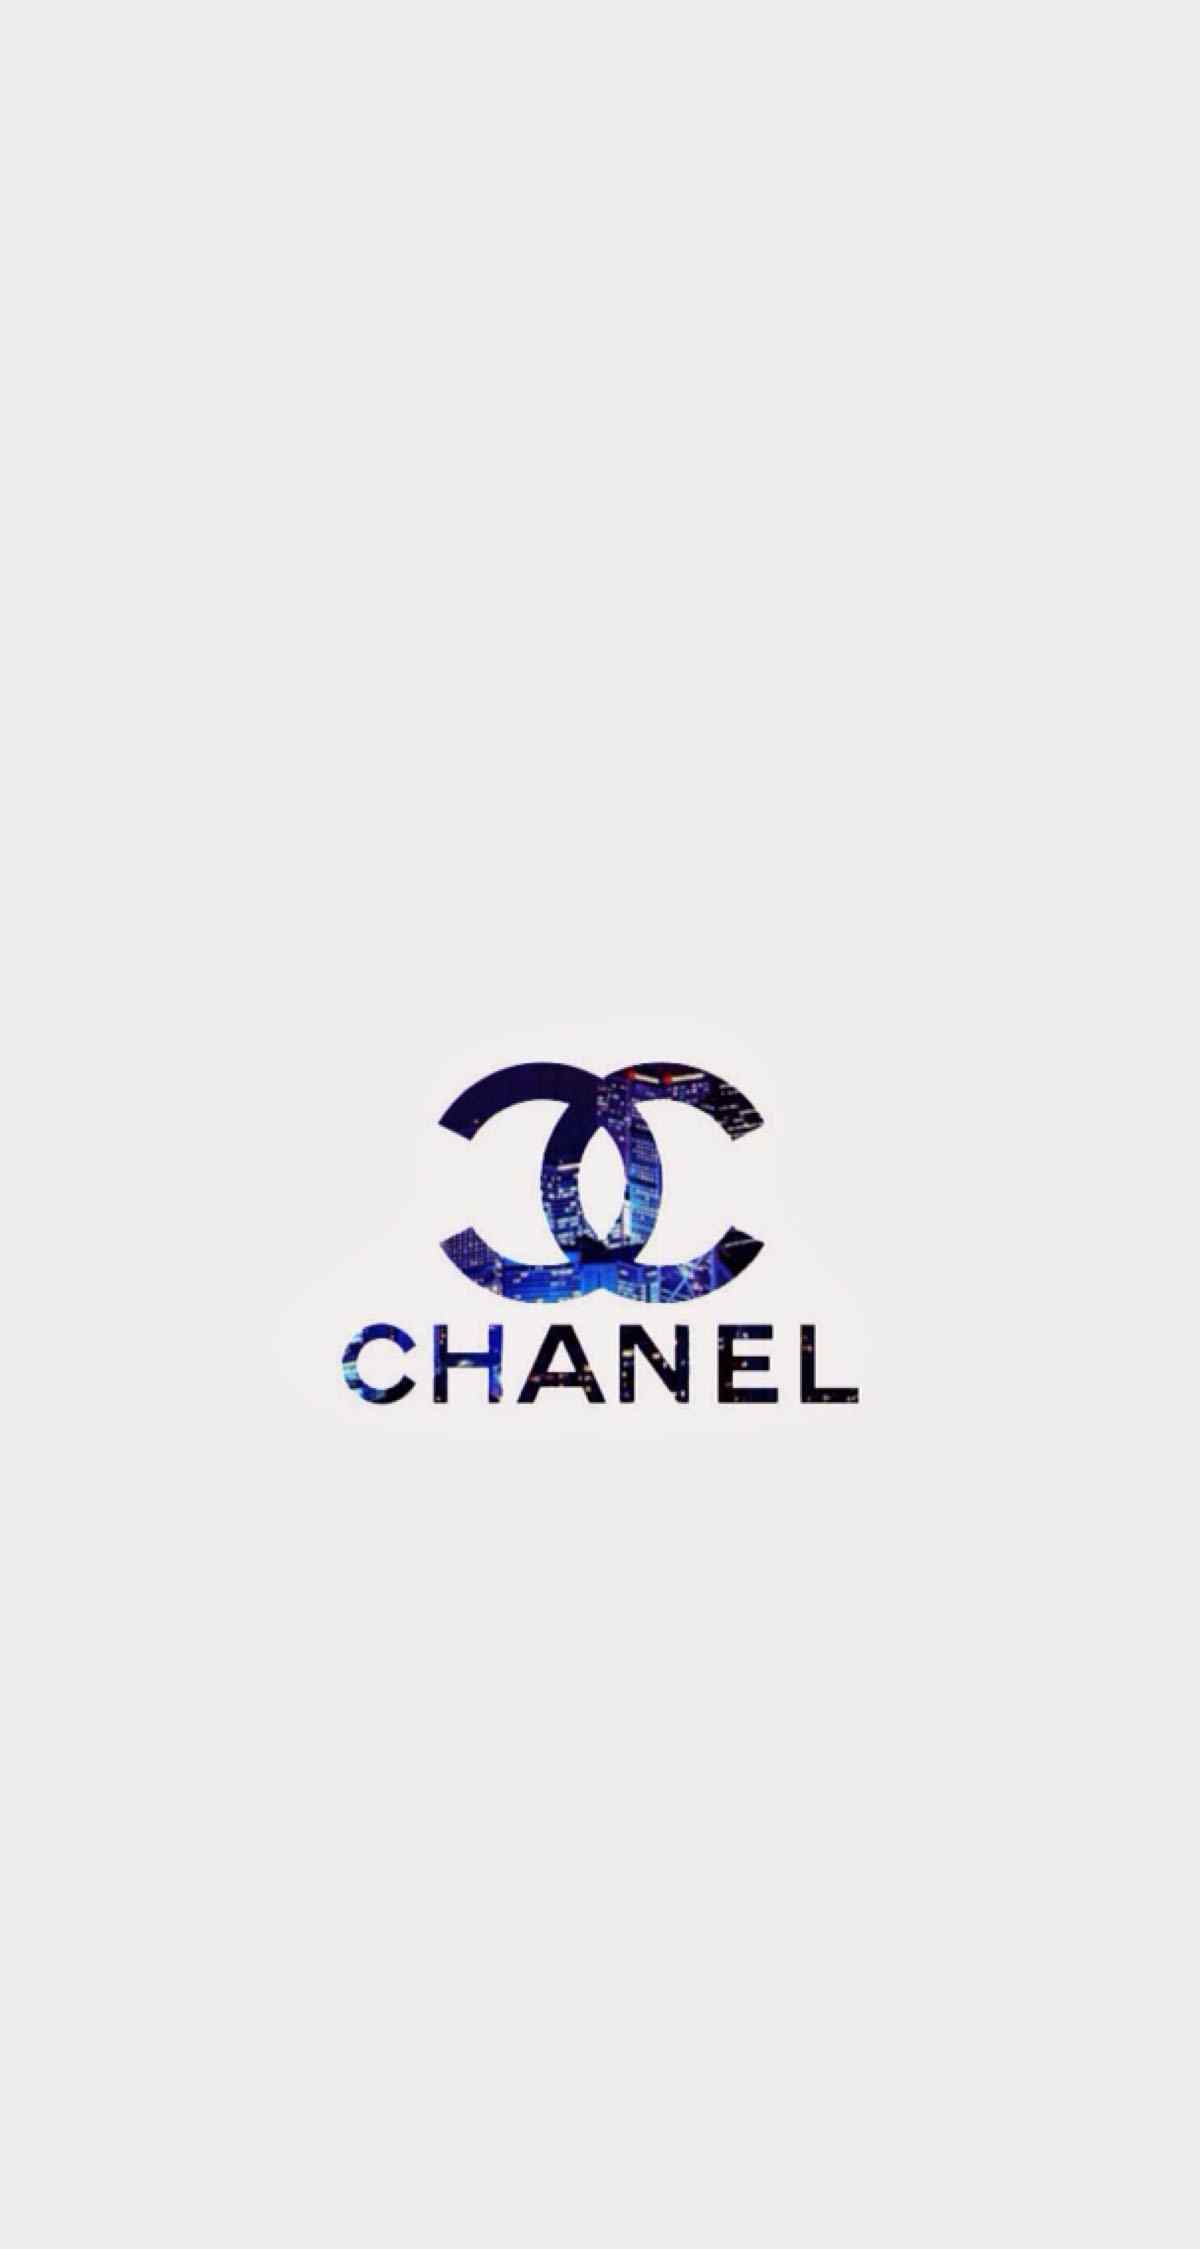 法国香奈儿品牌logo标志简约图片手机壁纸